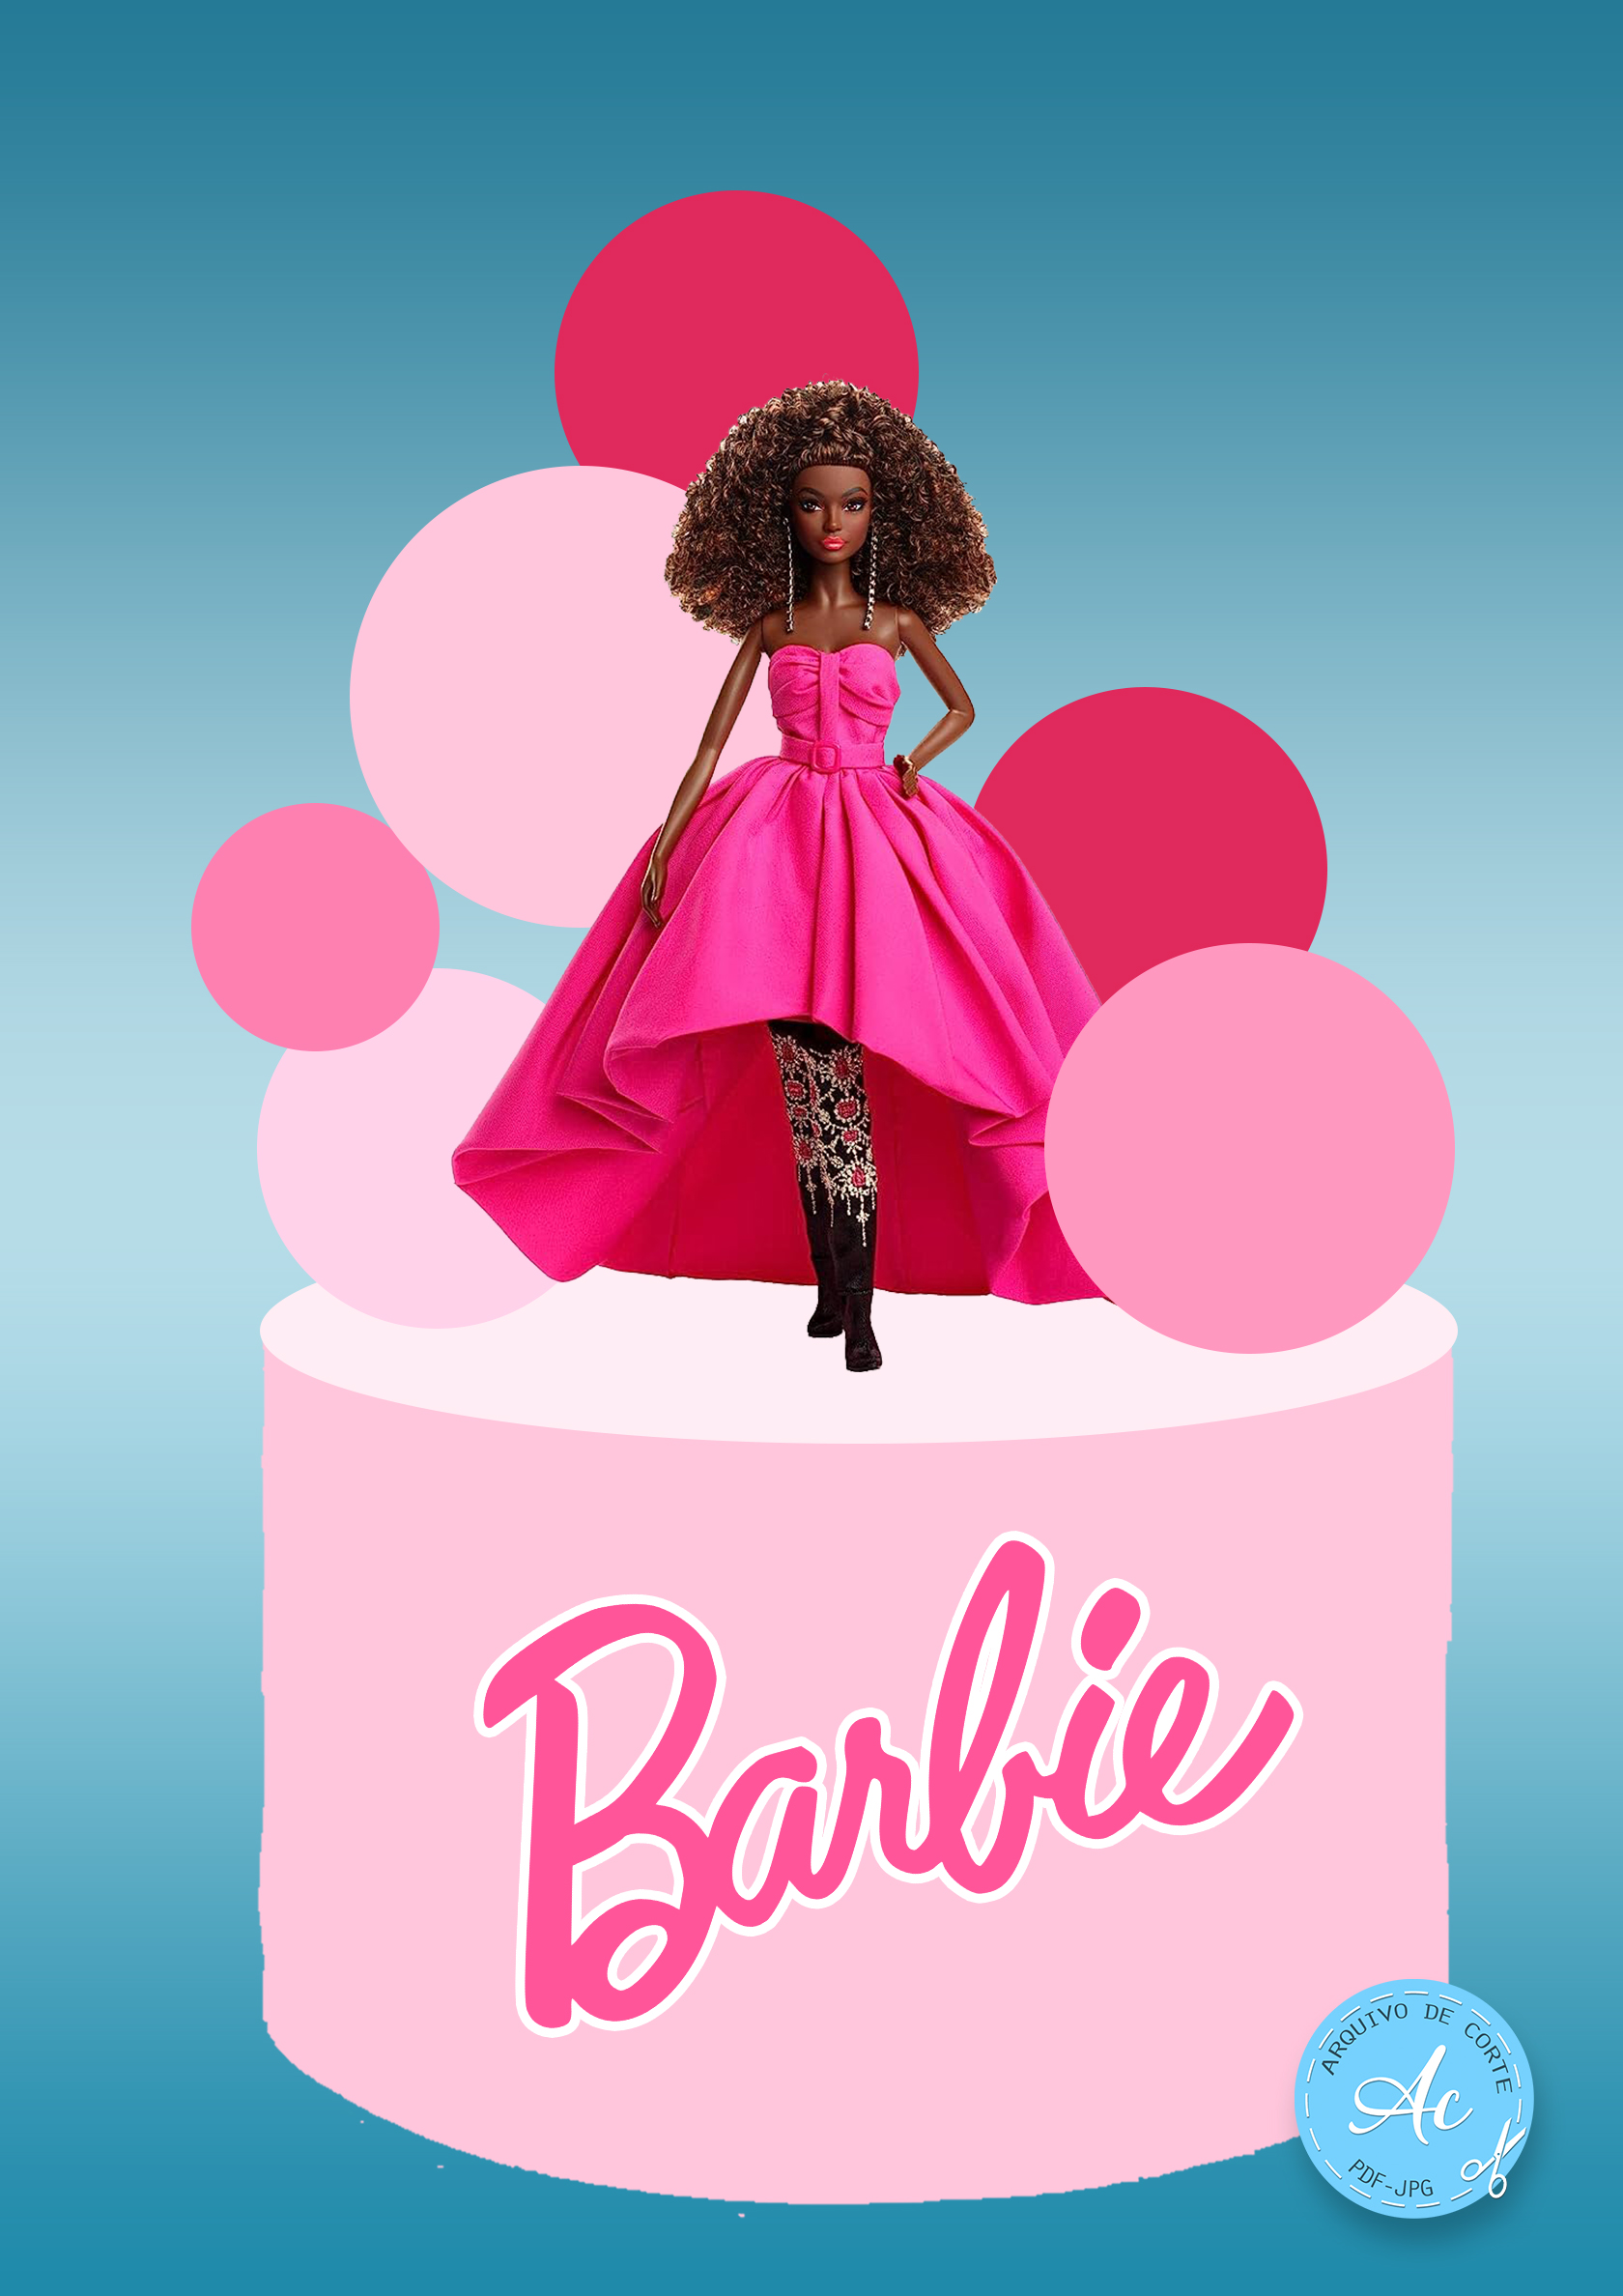 Topo de bolo Barbie Negra #1 - Arquivo de corte